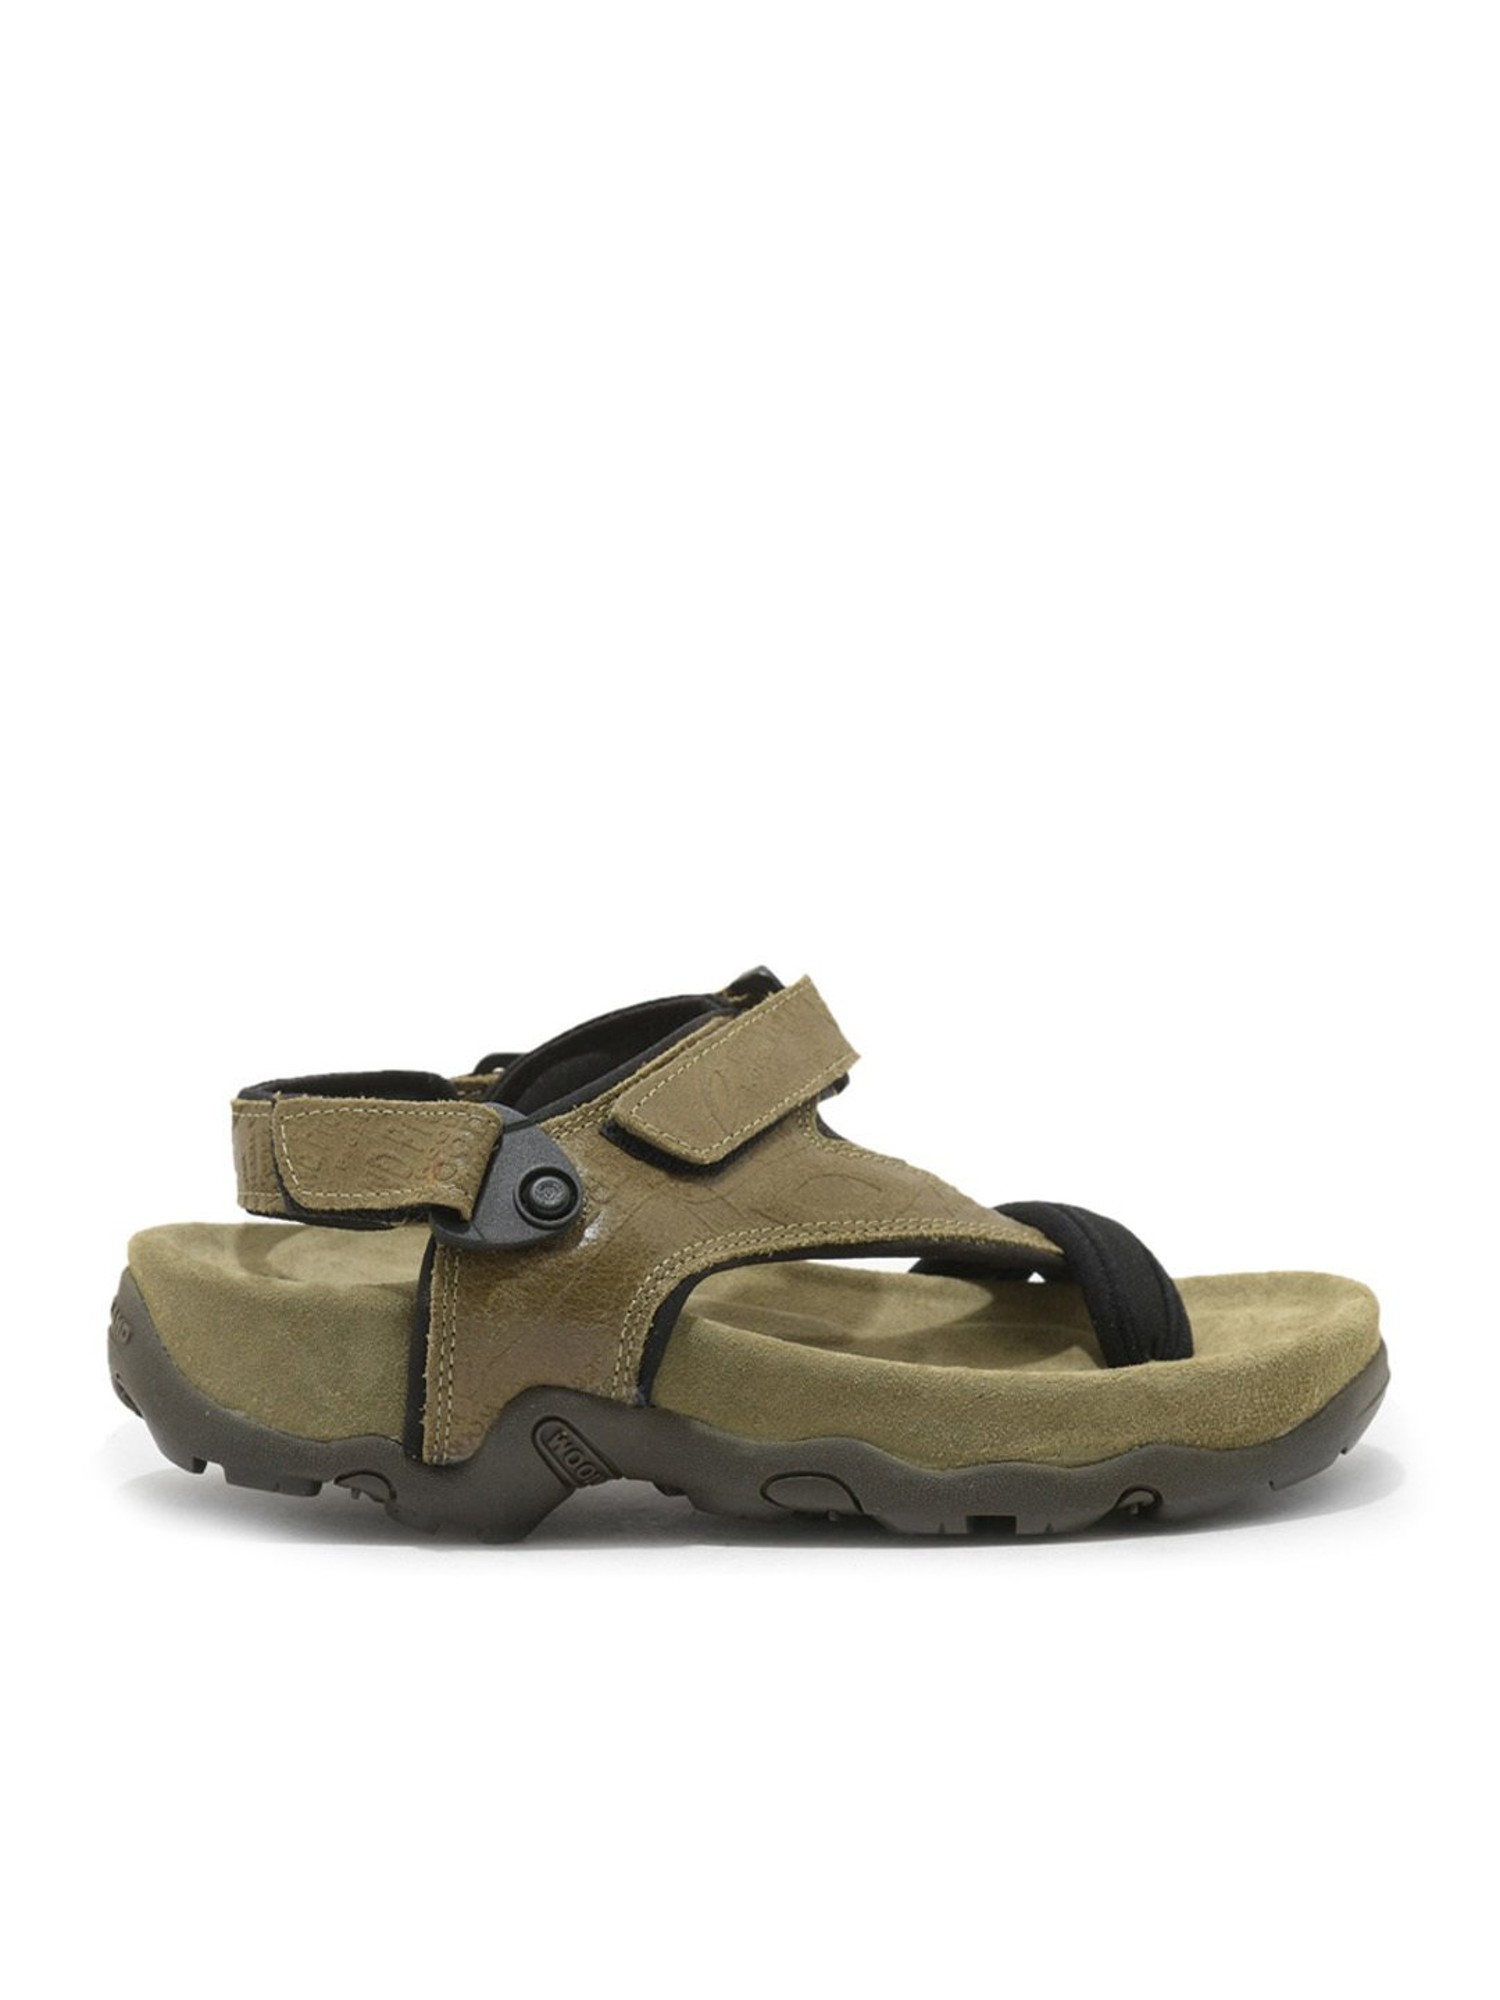 Woodland Men Sandals : Amazon.in: Fashion-anthinhphatland.vn